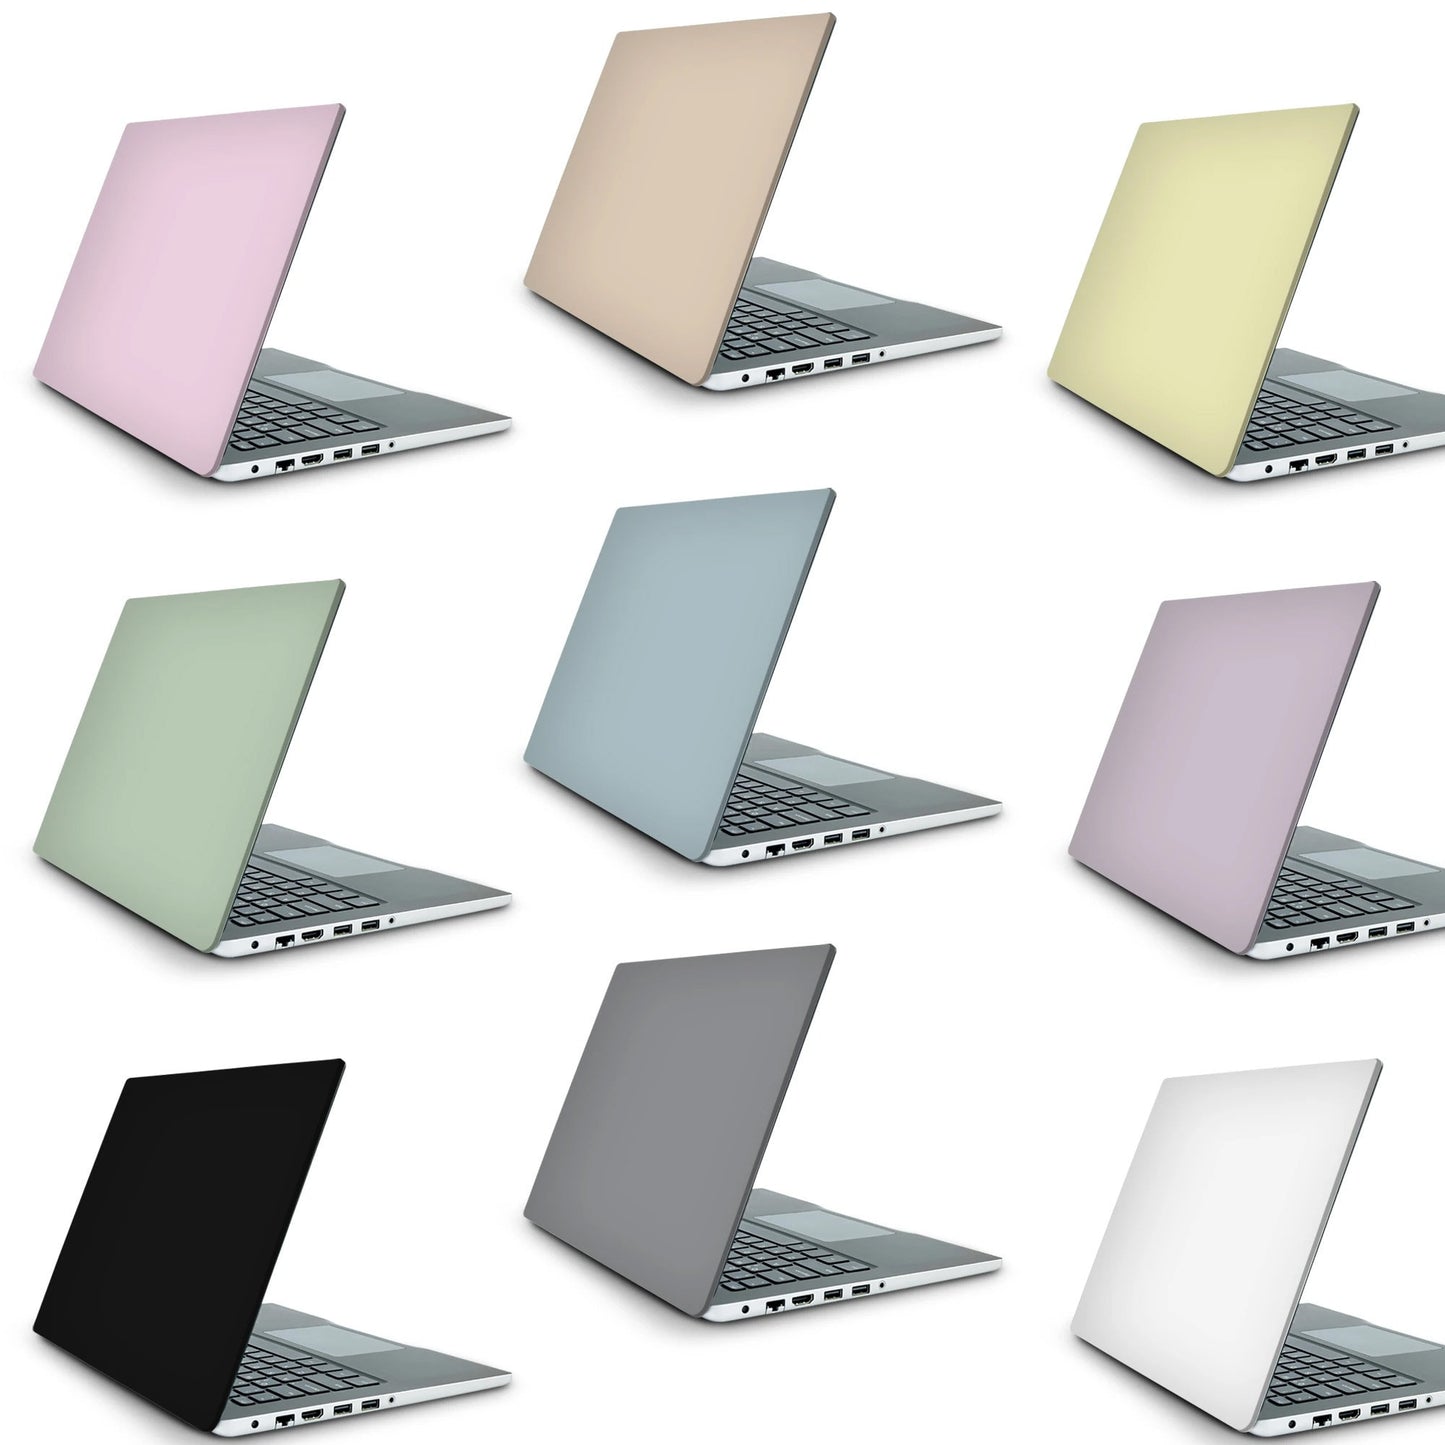 Mountain Range Laptop Skin, Laptop Cover, Laptop Skins, Removable Laptop Skins, Laptop Decal, Customized Laptop Skin, Laptop Stickers 200